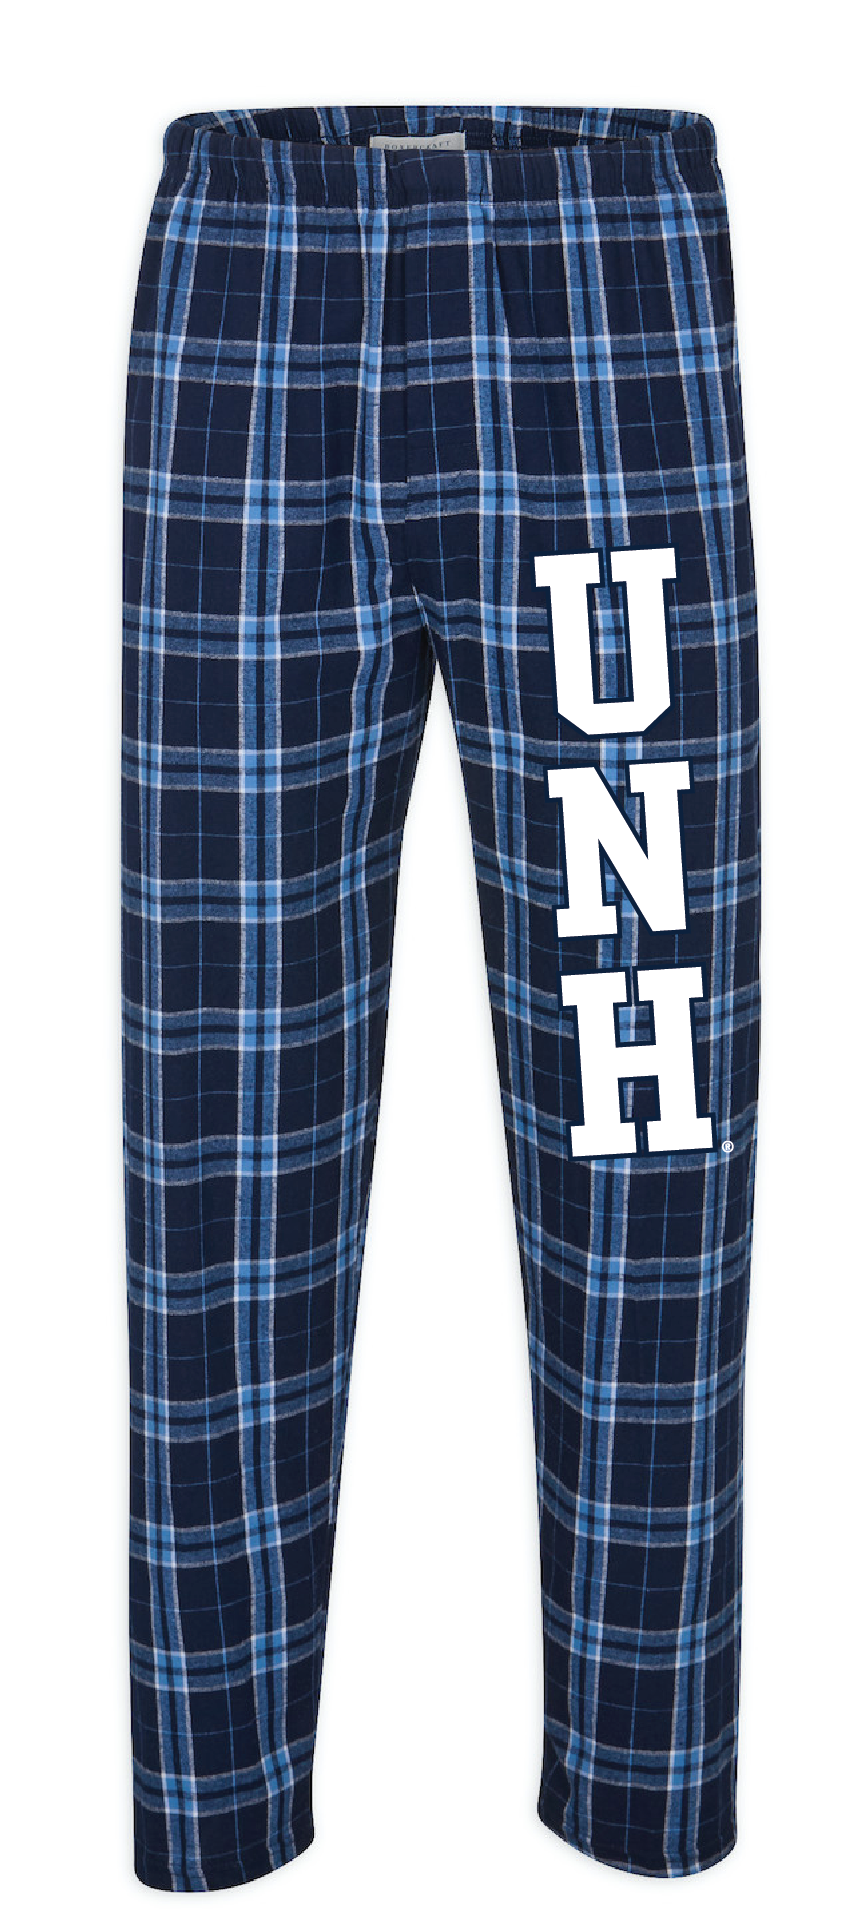 UNH Flannel Pants